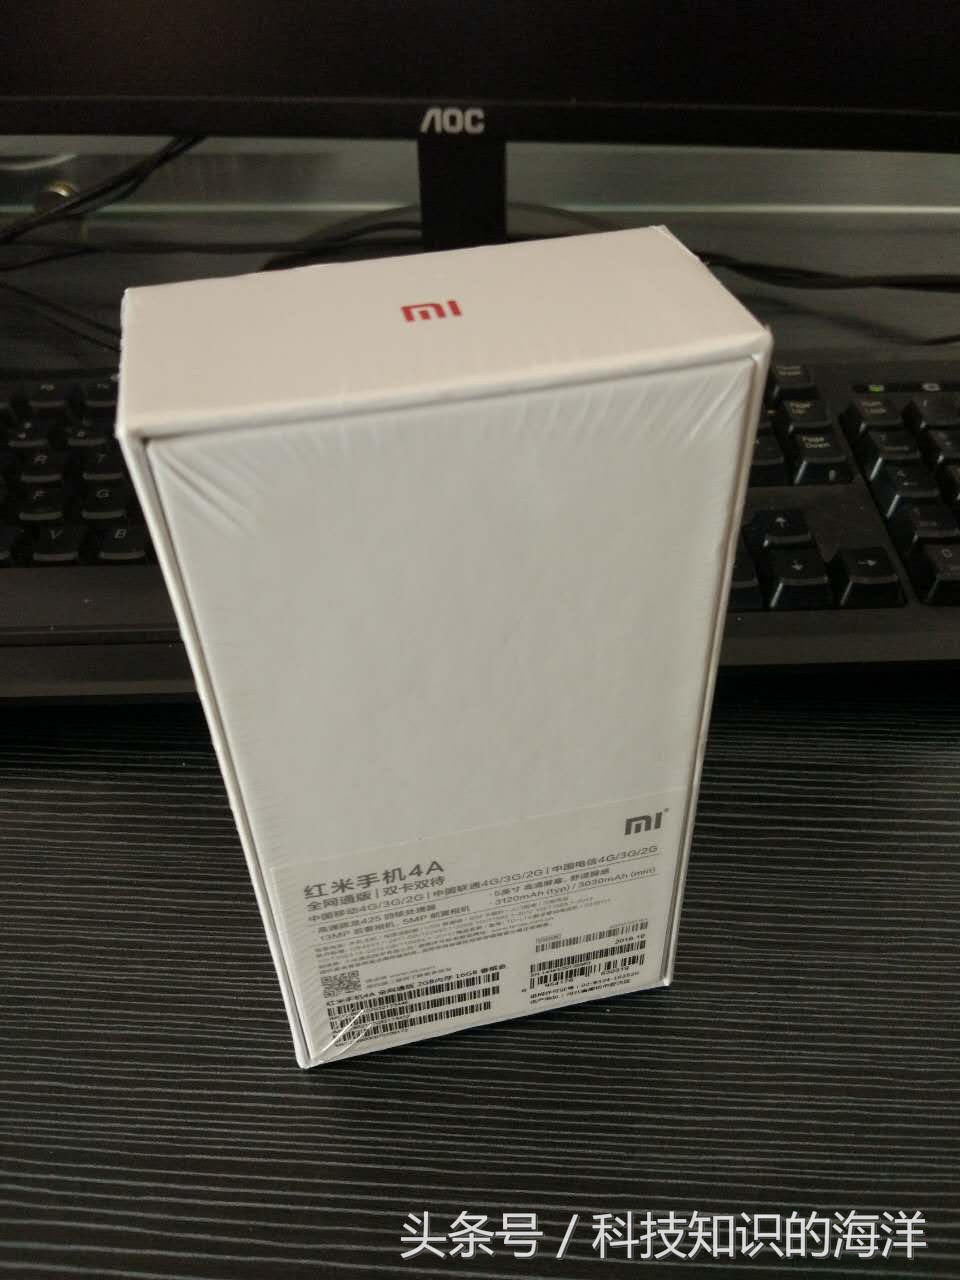 双十一 新鮮货 红米4A详细拆箱 手机3d游戏界面测评